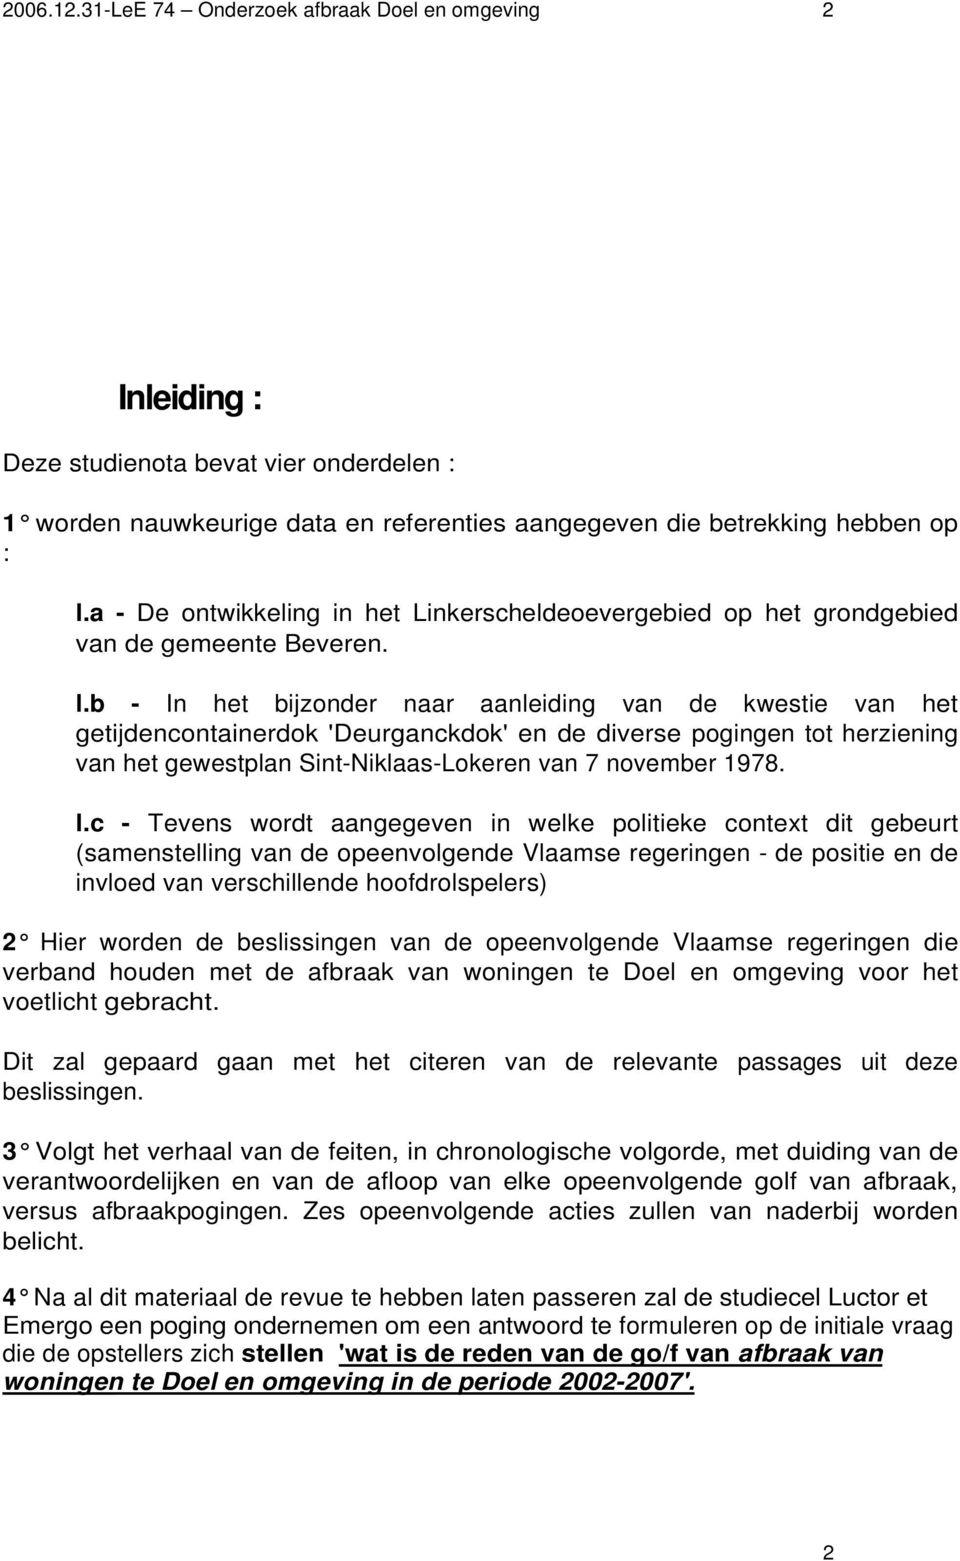 b - In het bijzonder naar aanleiding van de kwestie van het getijdencontainerdok 'Deurganckdok' en de diverse pogingen tot herziening van het gewestplan Sint-Niklaas-Lokeren van 7 november 1978. l.